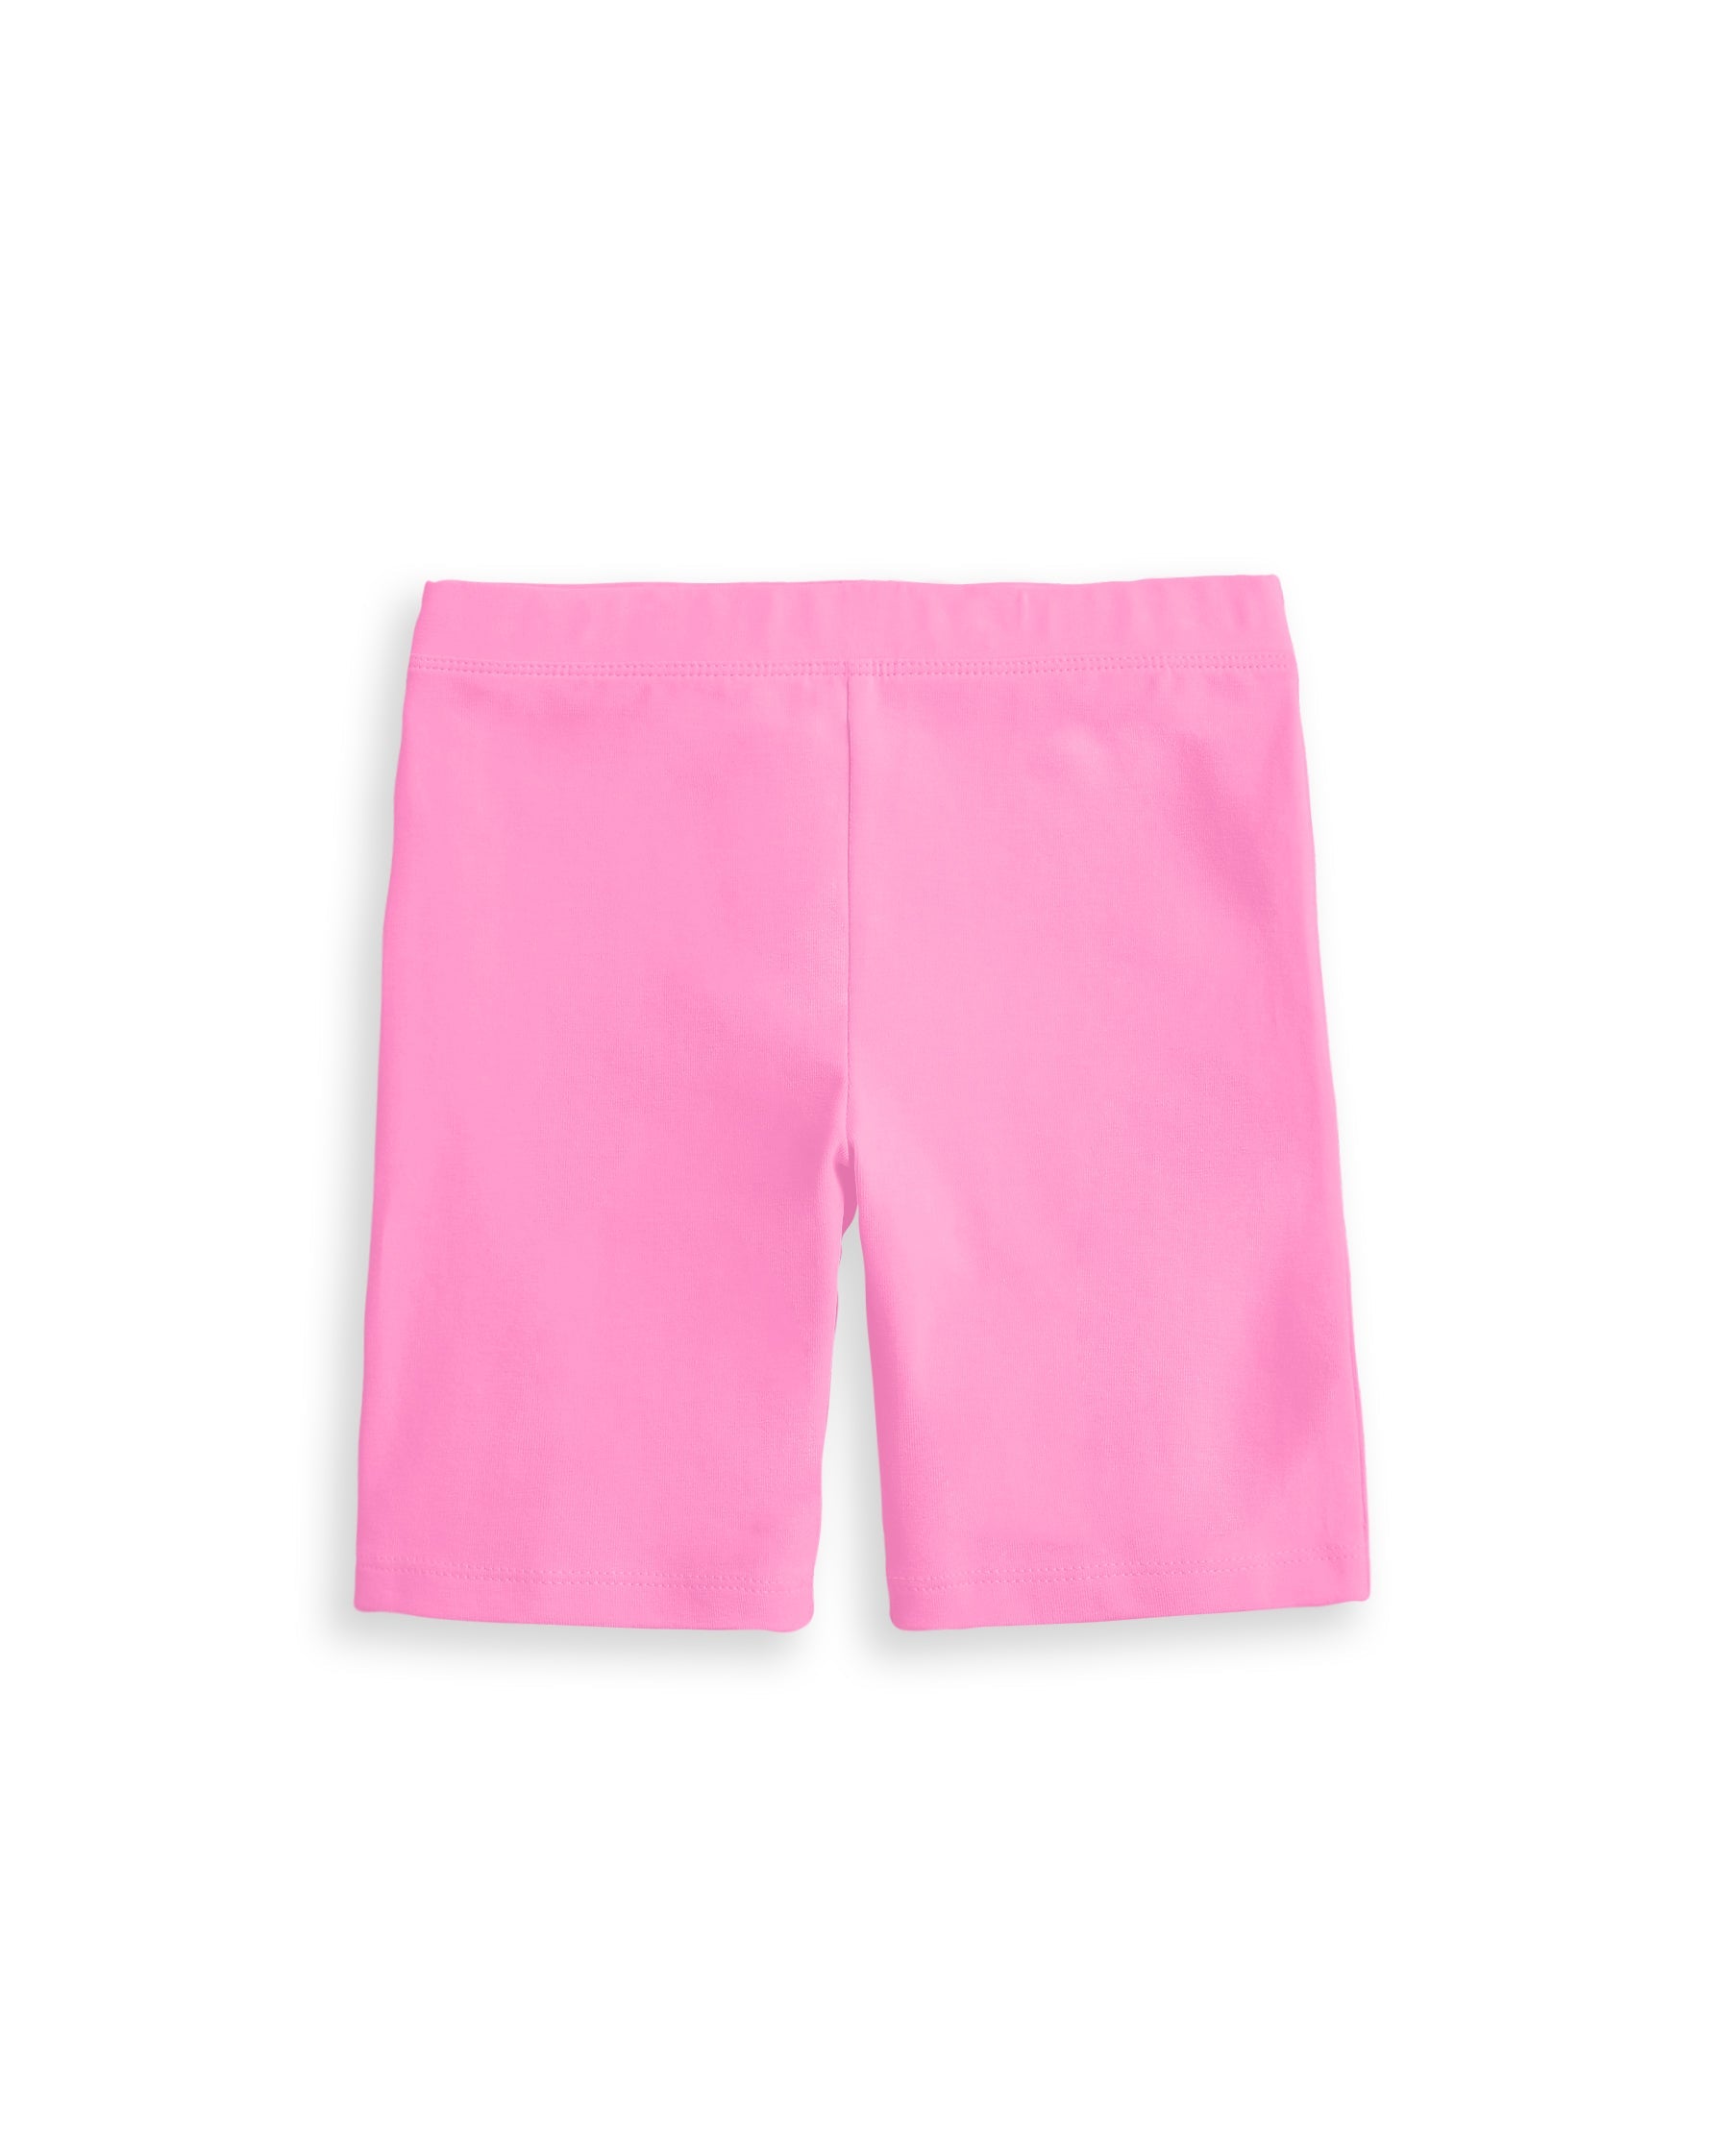 Organic Cotton Bike Short - Powder Pink – Lulu and Lo